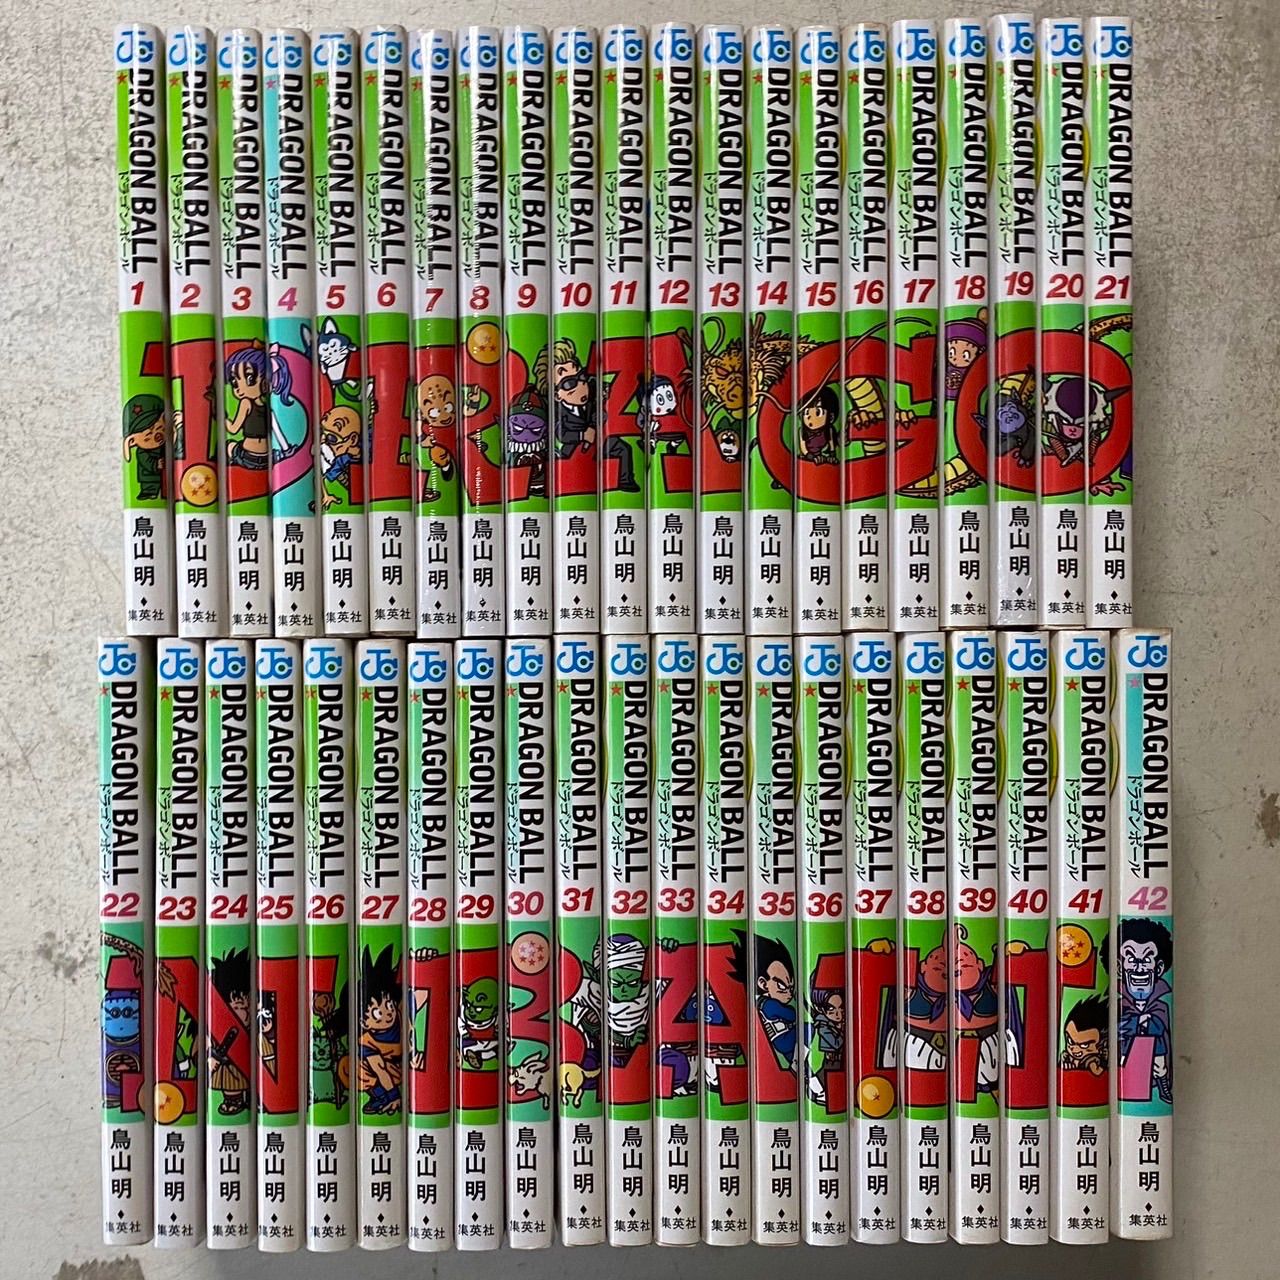 DRAGON BALL ドラゴンボール 新装版コミック 全42巻完結セット+おまけ 